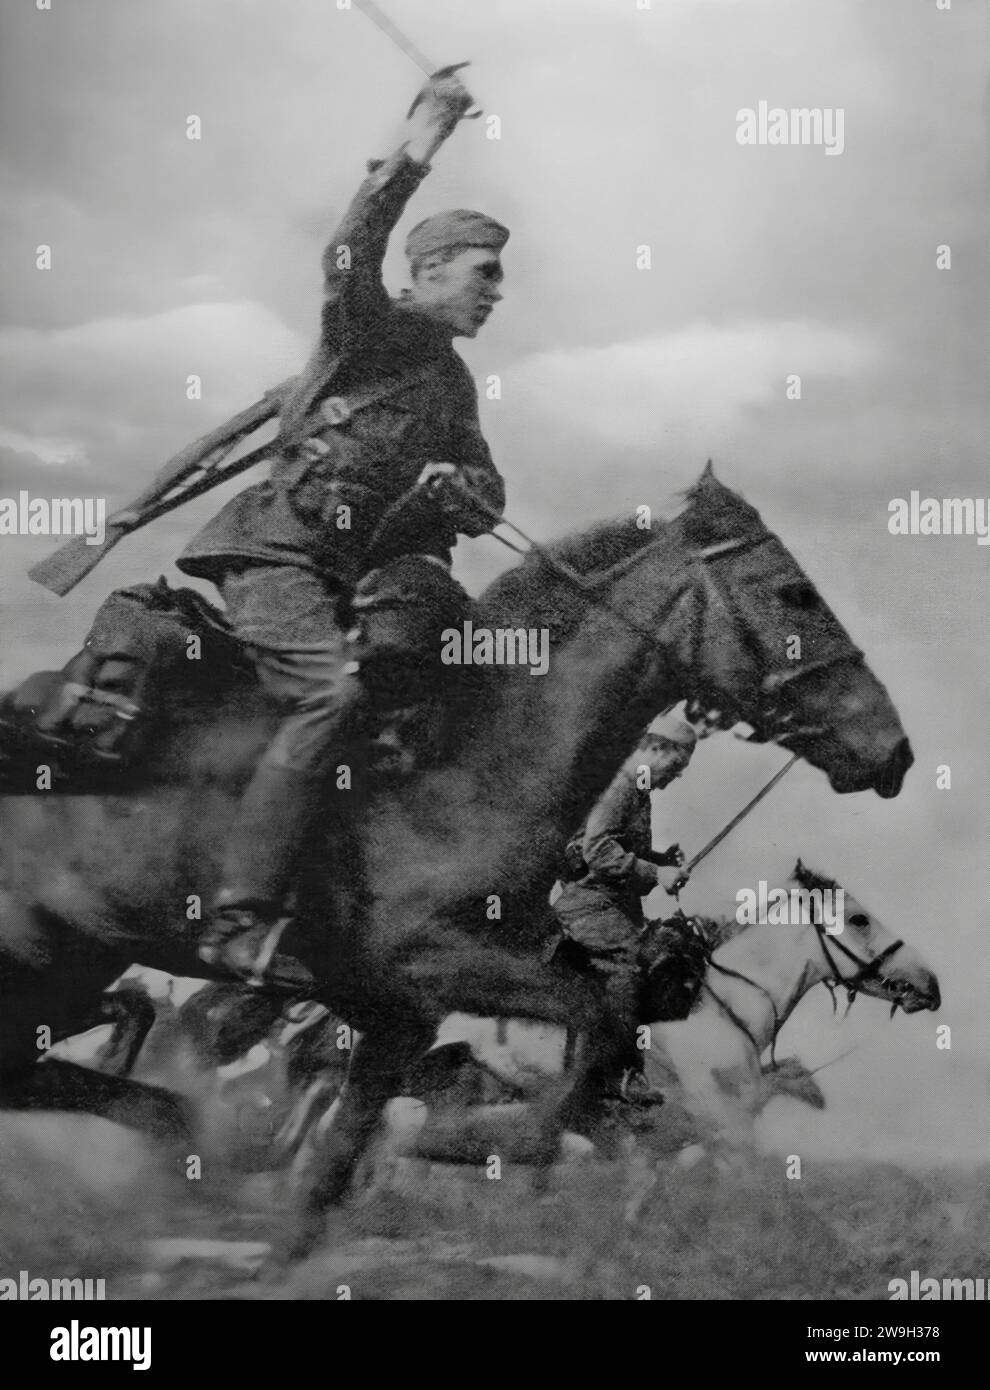 Des soldats cosaques à cheval attaquent les positions allemandes au cours de l'opération Koutouzov de la Seconde Guerre mondiale, contre-offensives lancées le 12 juillet 1943 par l'Armée rouge dans le cadre de l'opération offensive stratégique Koursk contre le groupe d'armées Center de la Heer allemande. L'opération se termine le 18 août 1943 avec la capture d'Orel, le centre administratif de l'oblast d'Oryol, en Russie. Banque D'Images